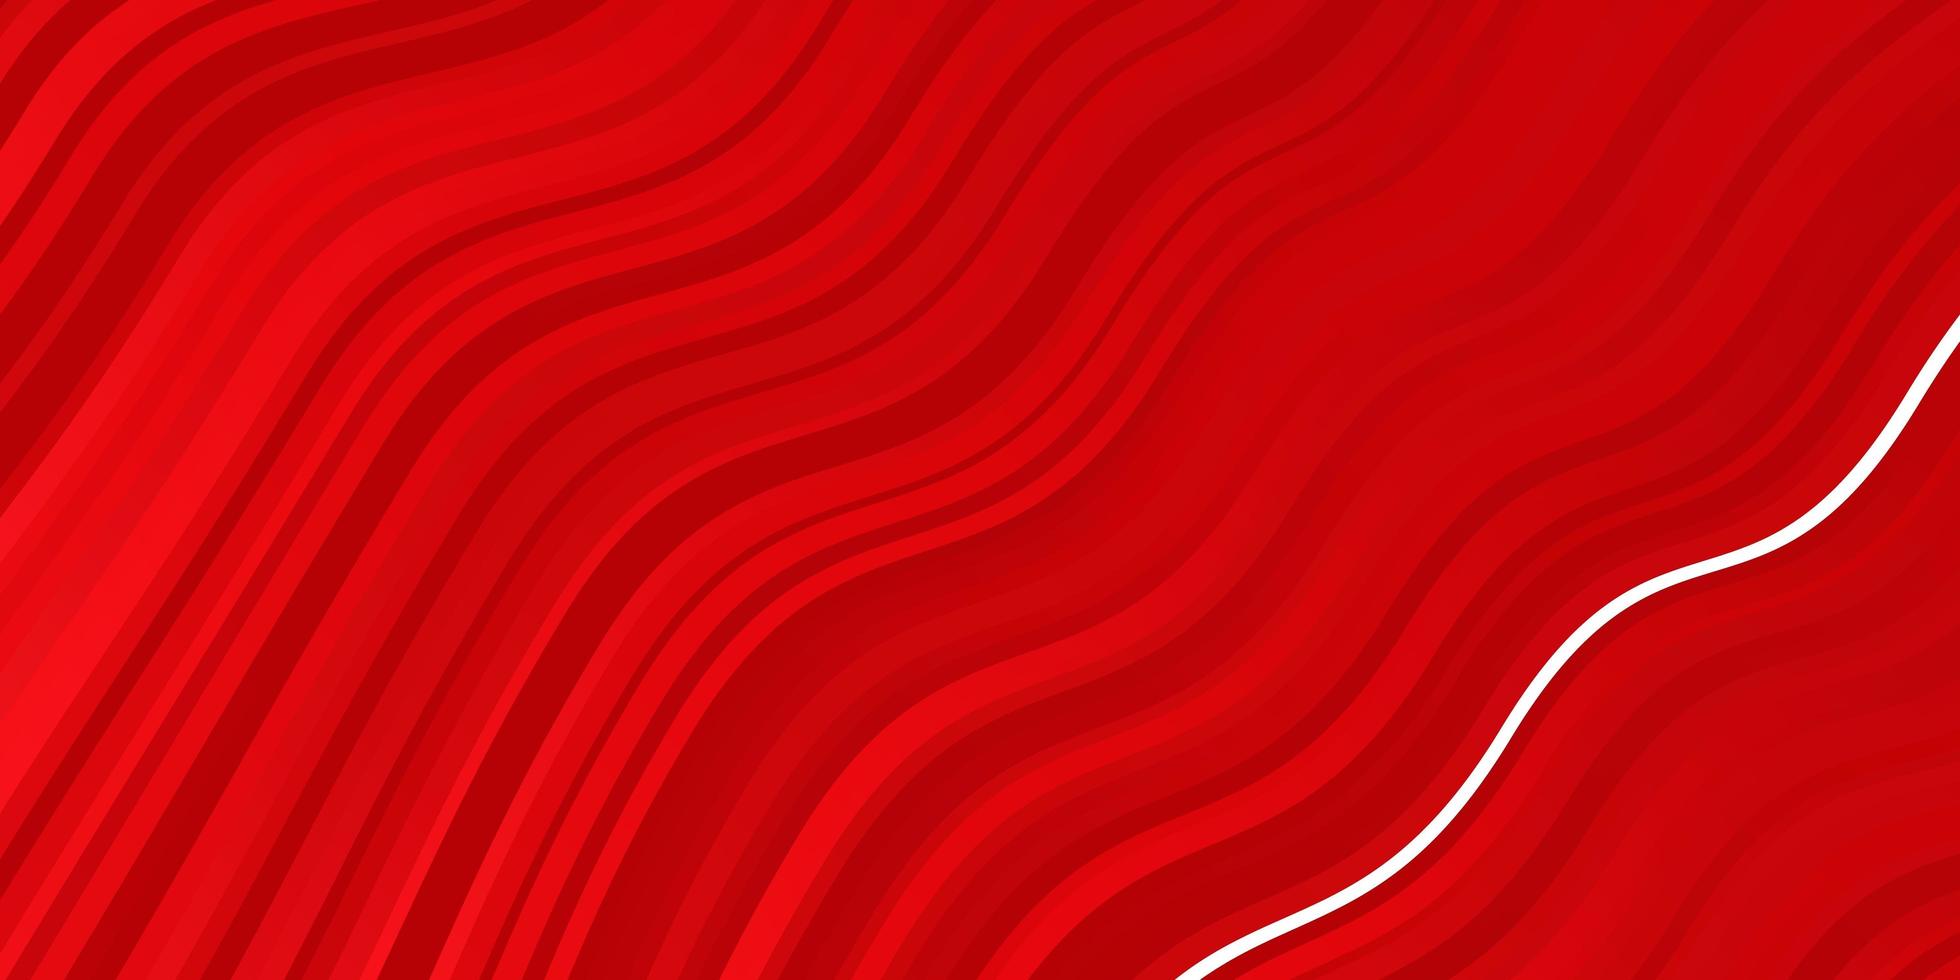 fundo vector vermelho claro com ilustração de arcos em estilo abstrato com gradiente curvo melhor design para o banner do seu cartaz de anúncio